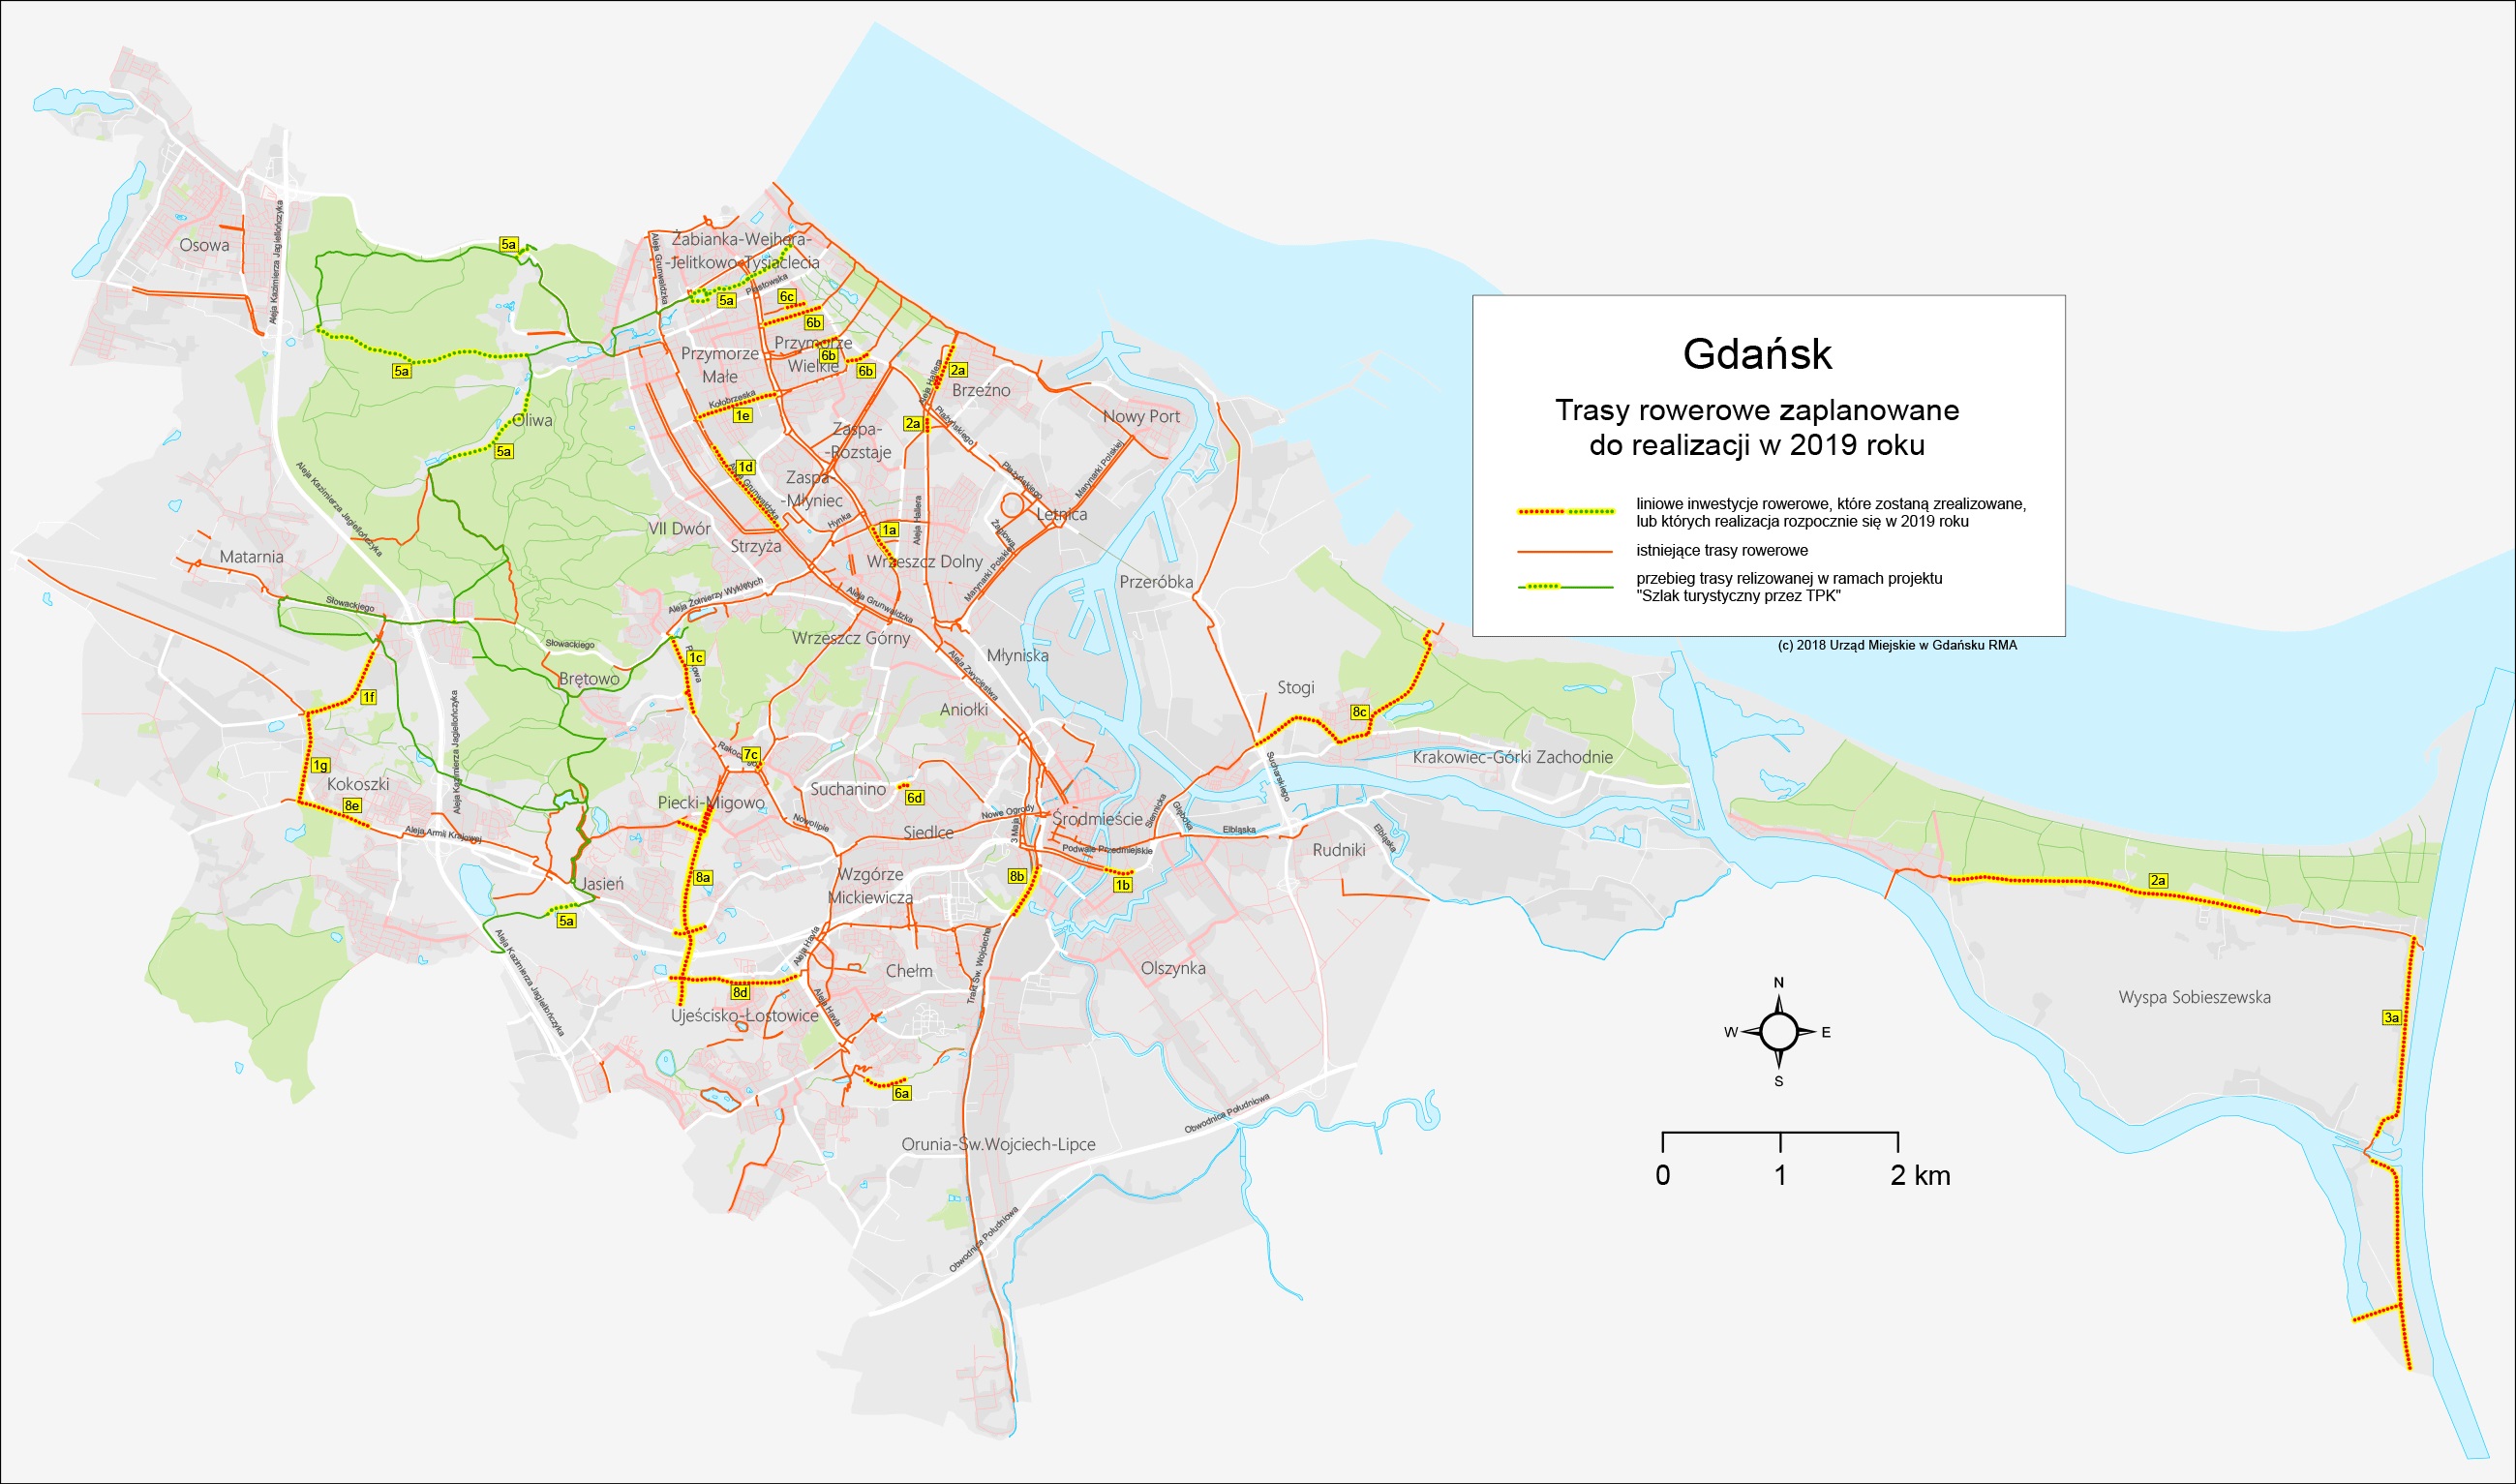 Gdansk inwestycje-rowerowe 2019